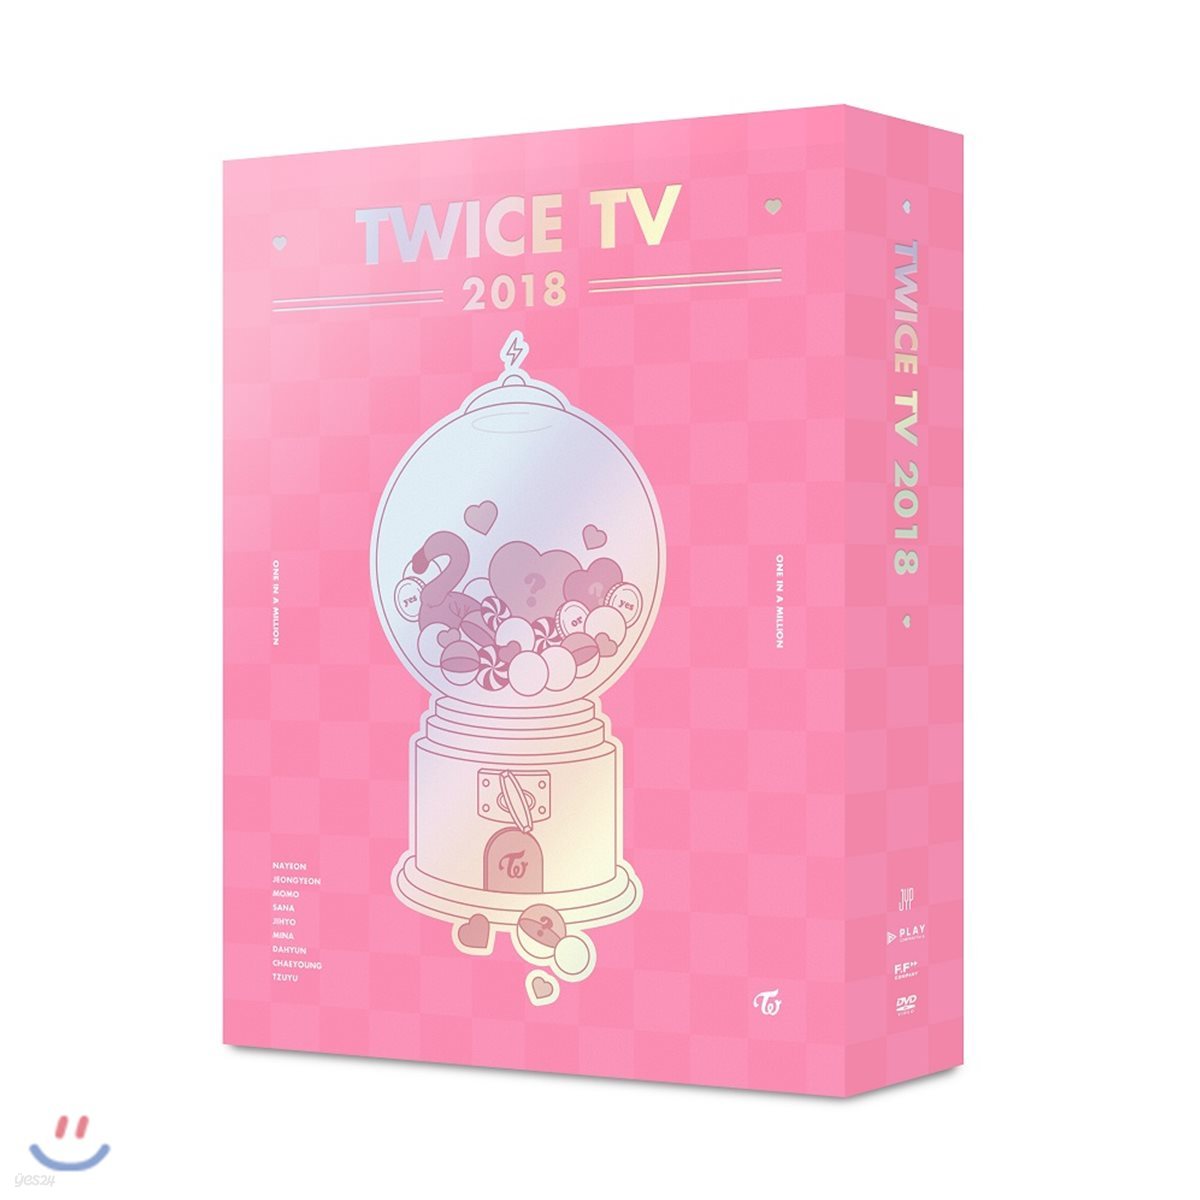 트와이스 (TWICE) - TWICE TV 2018 DVD